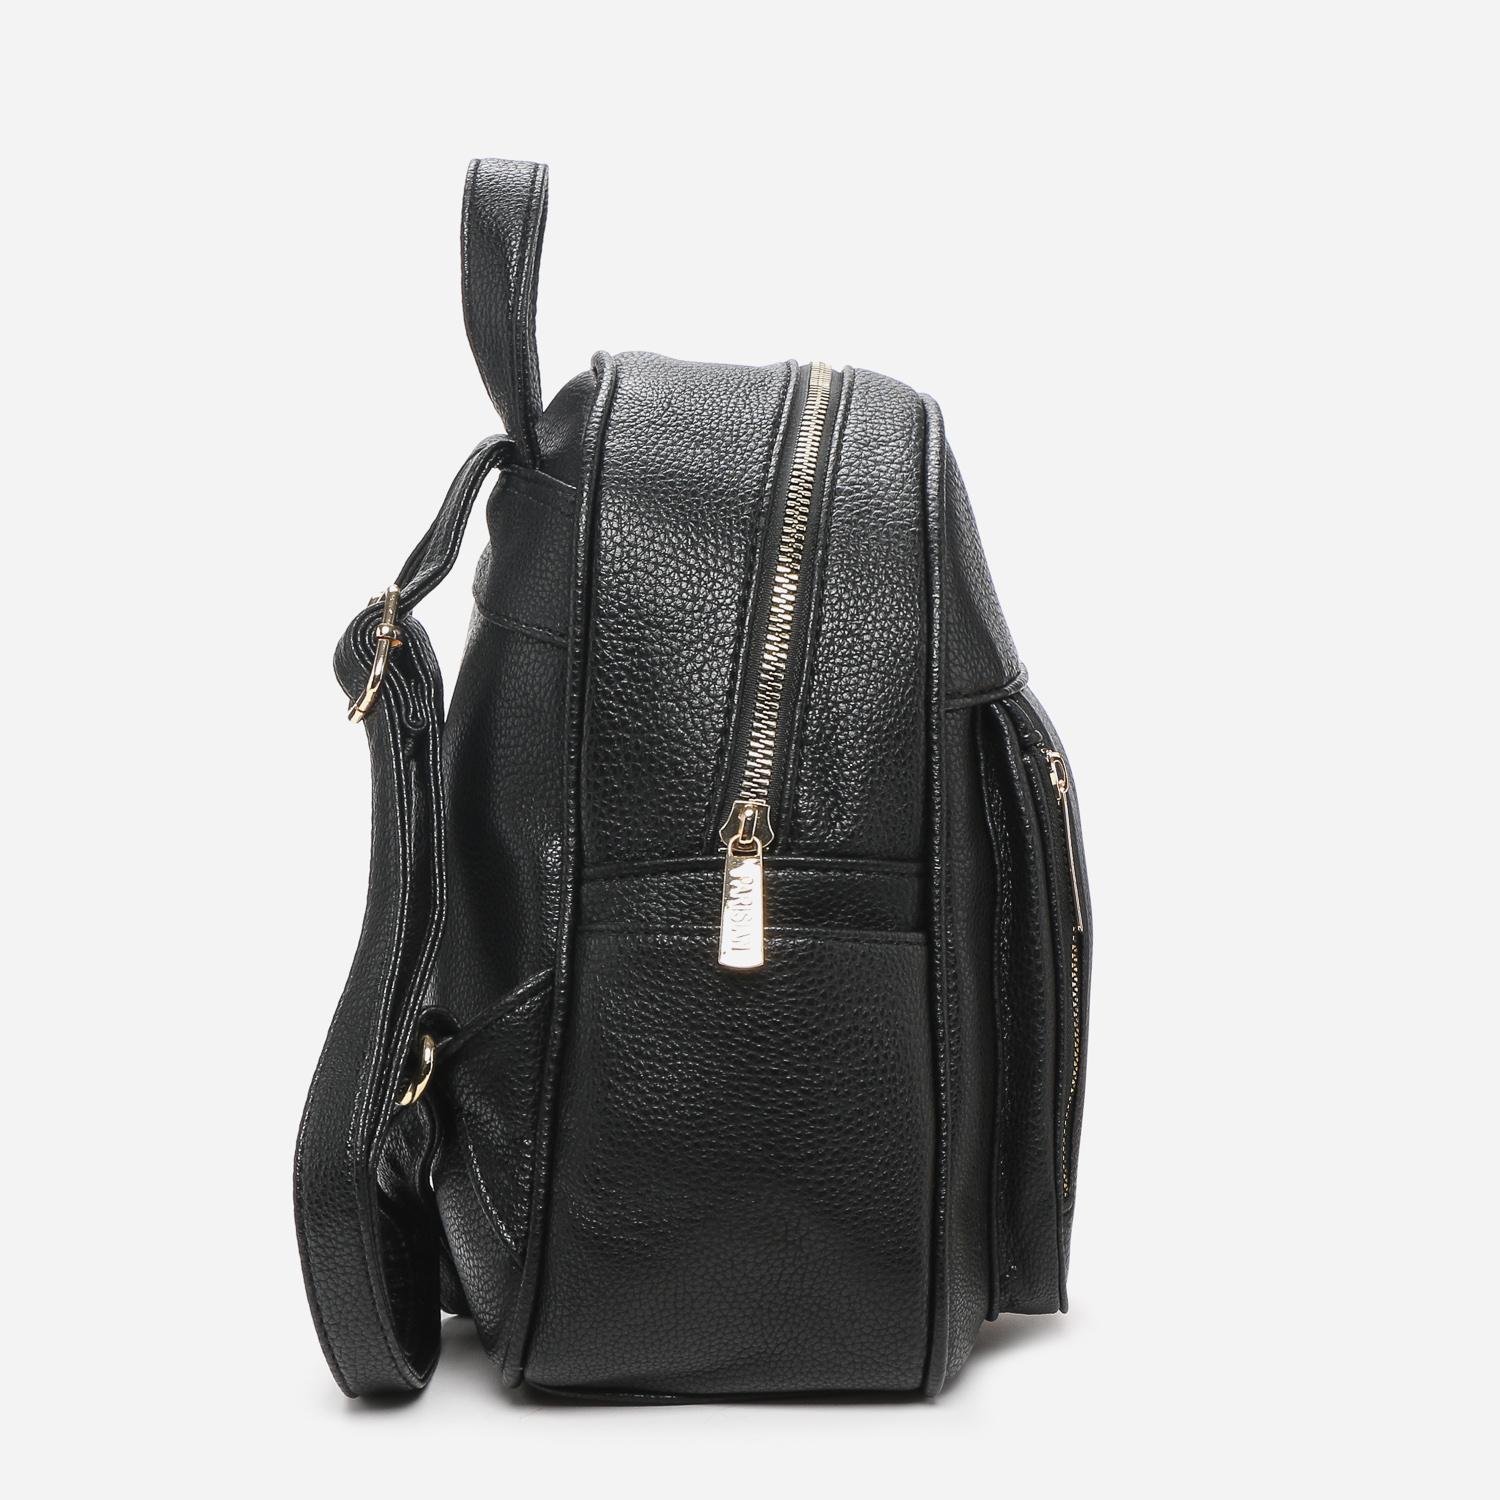 Parisian Ladies' Wilderness Mini Backpack in Black